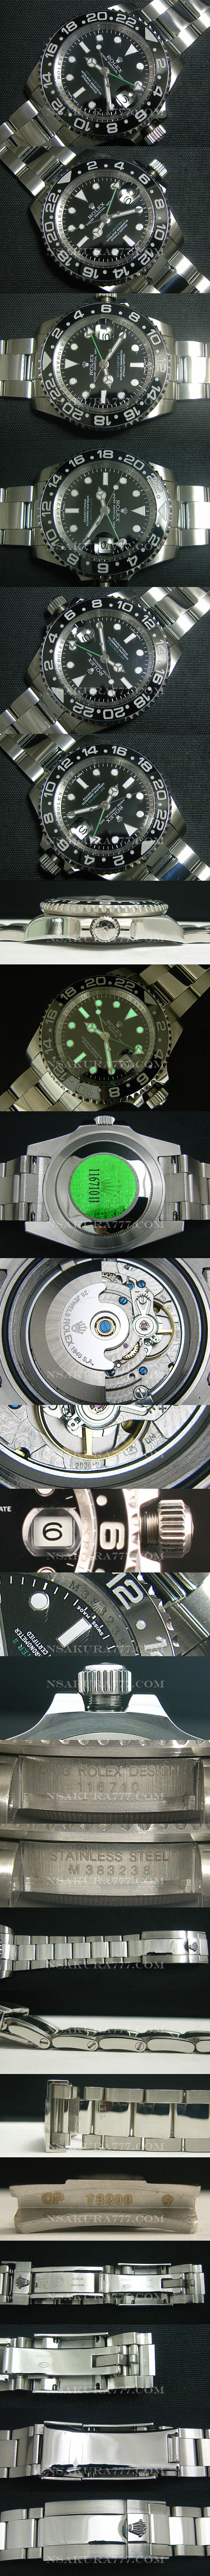 ロレックス GMT Master II 短針単独稼動調整可モデル swiss - ウインドウを閉じる